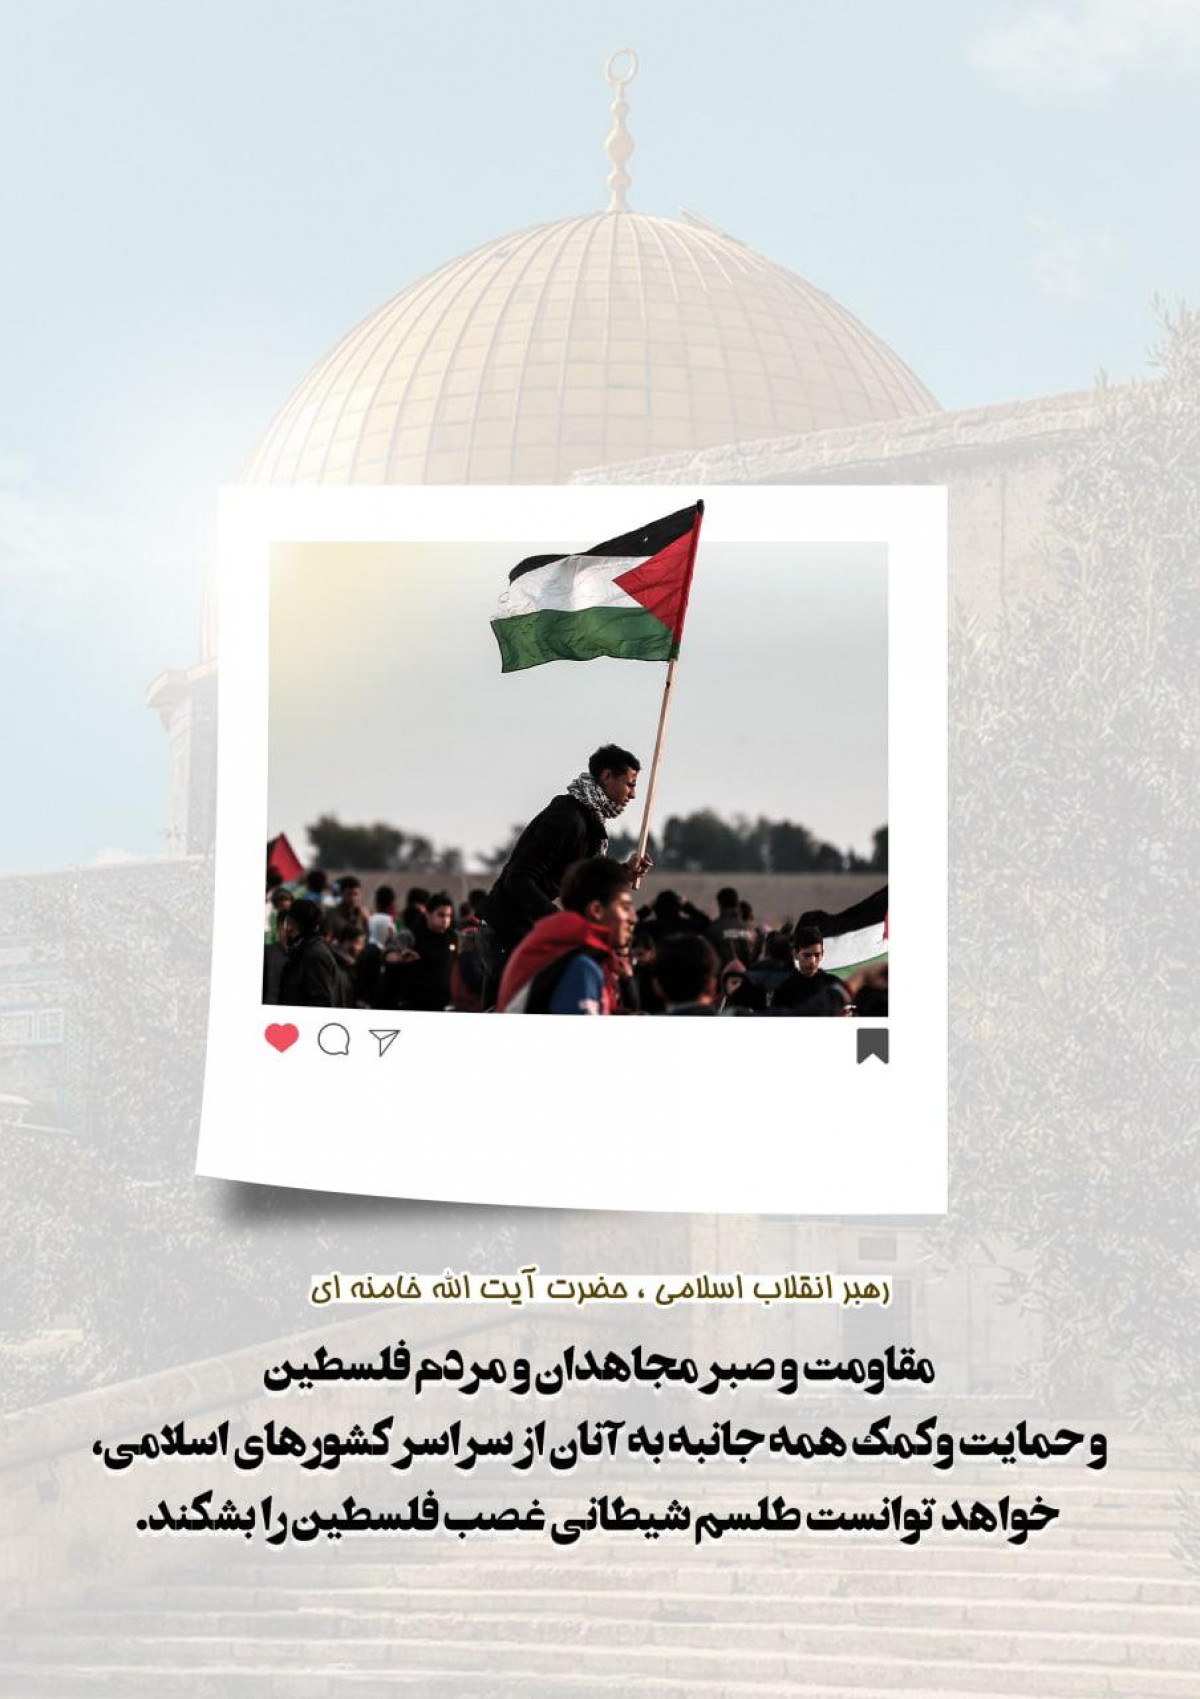 پوستر : مقاومت و صبر مجاهدان و مردم فلسطین و حمایت